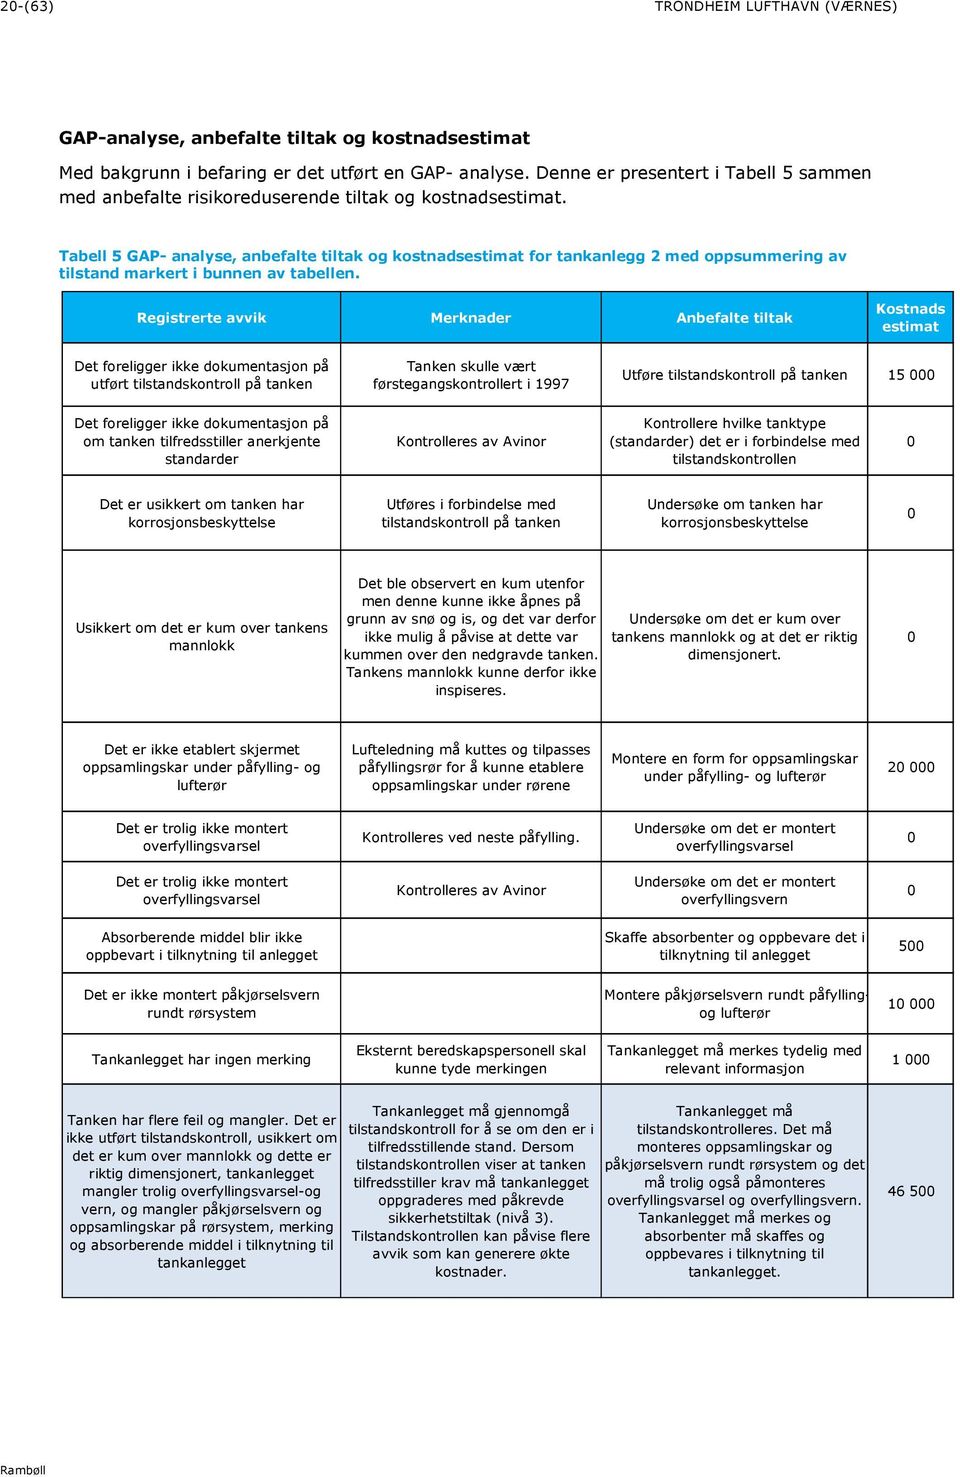 Tabell 5 GAP- analyse, anbefalte tiltak og kostnadsestimat for tankanlegg 2 med oppsummering av tilstand markert i bunnen av tabellen.